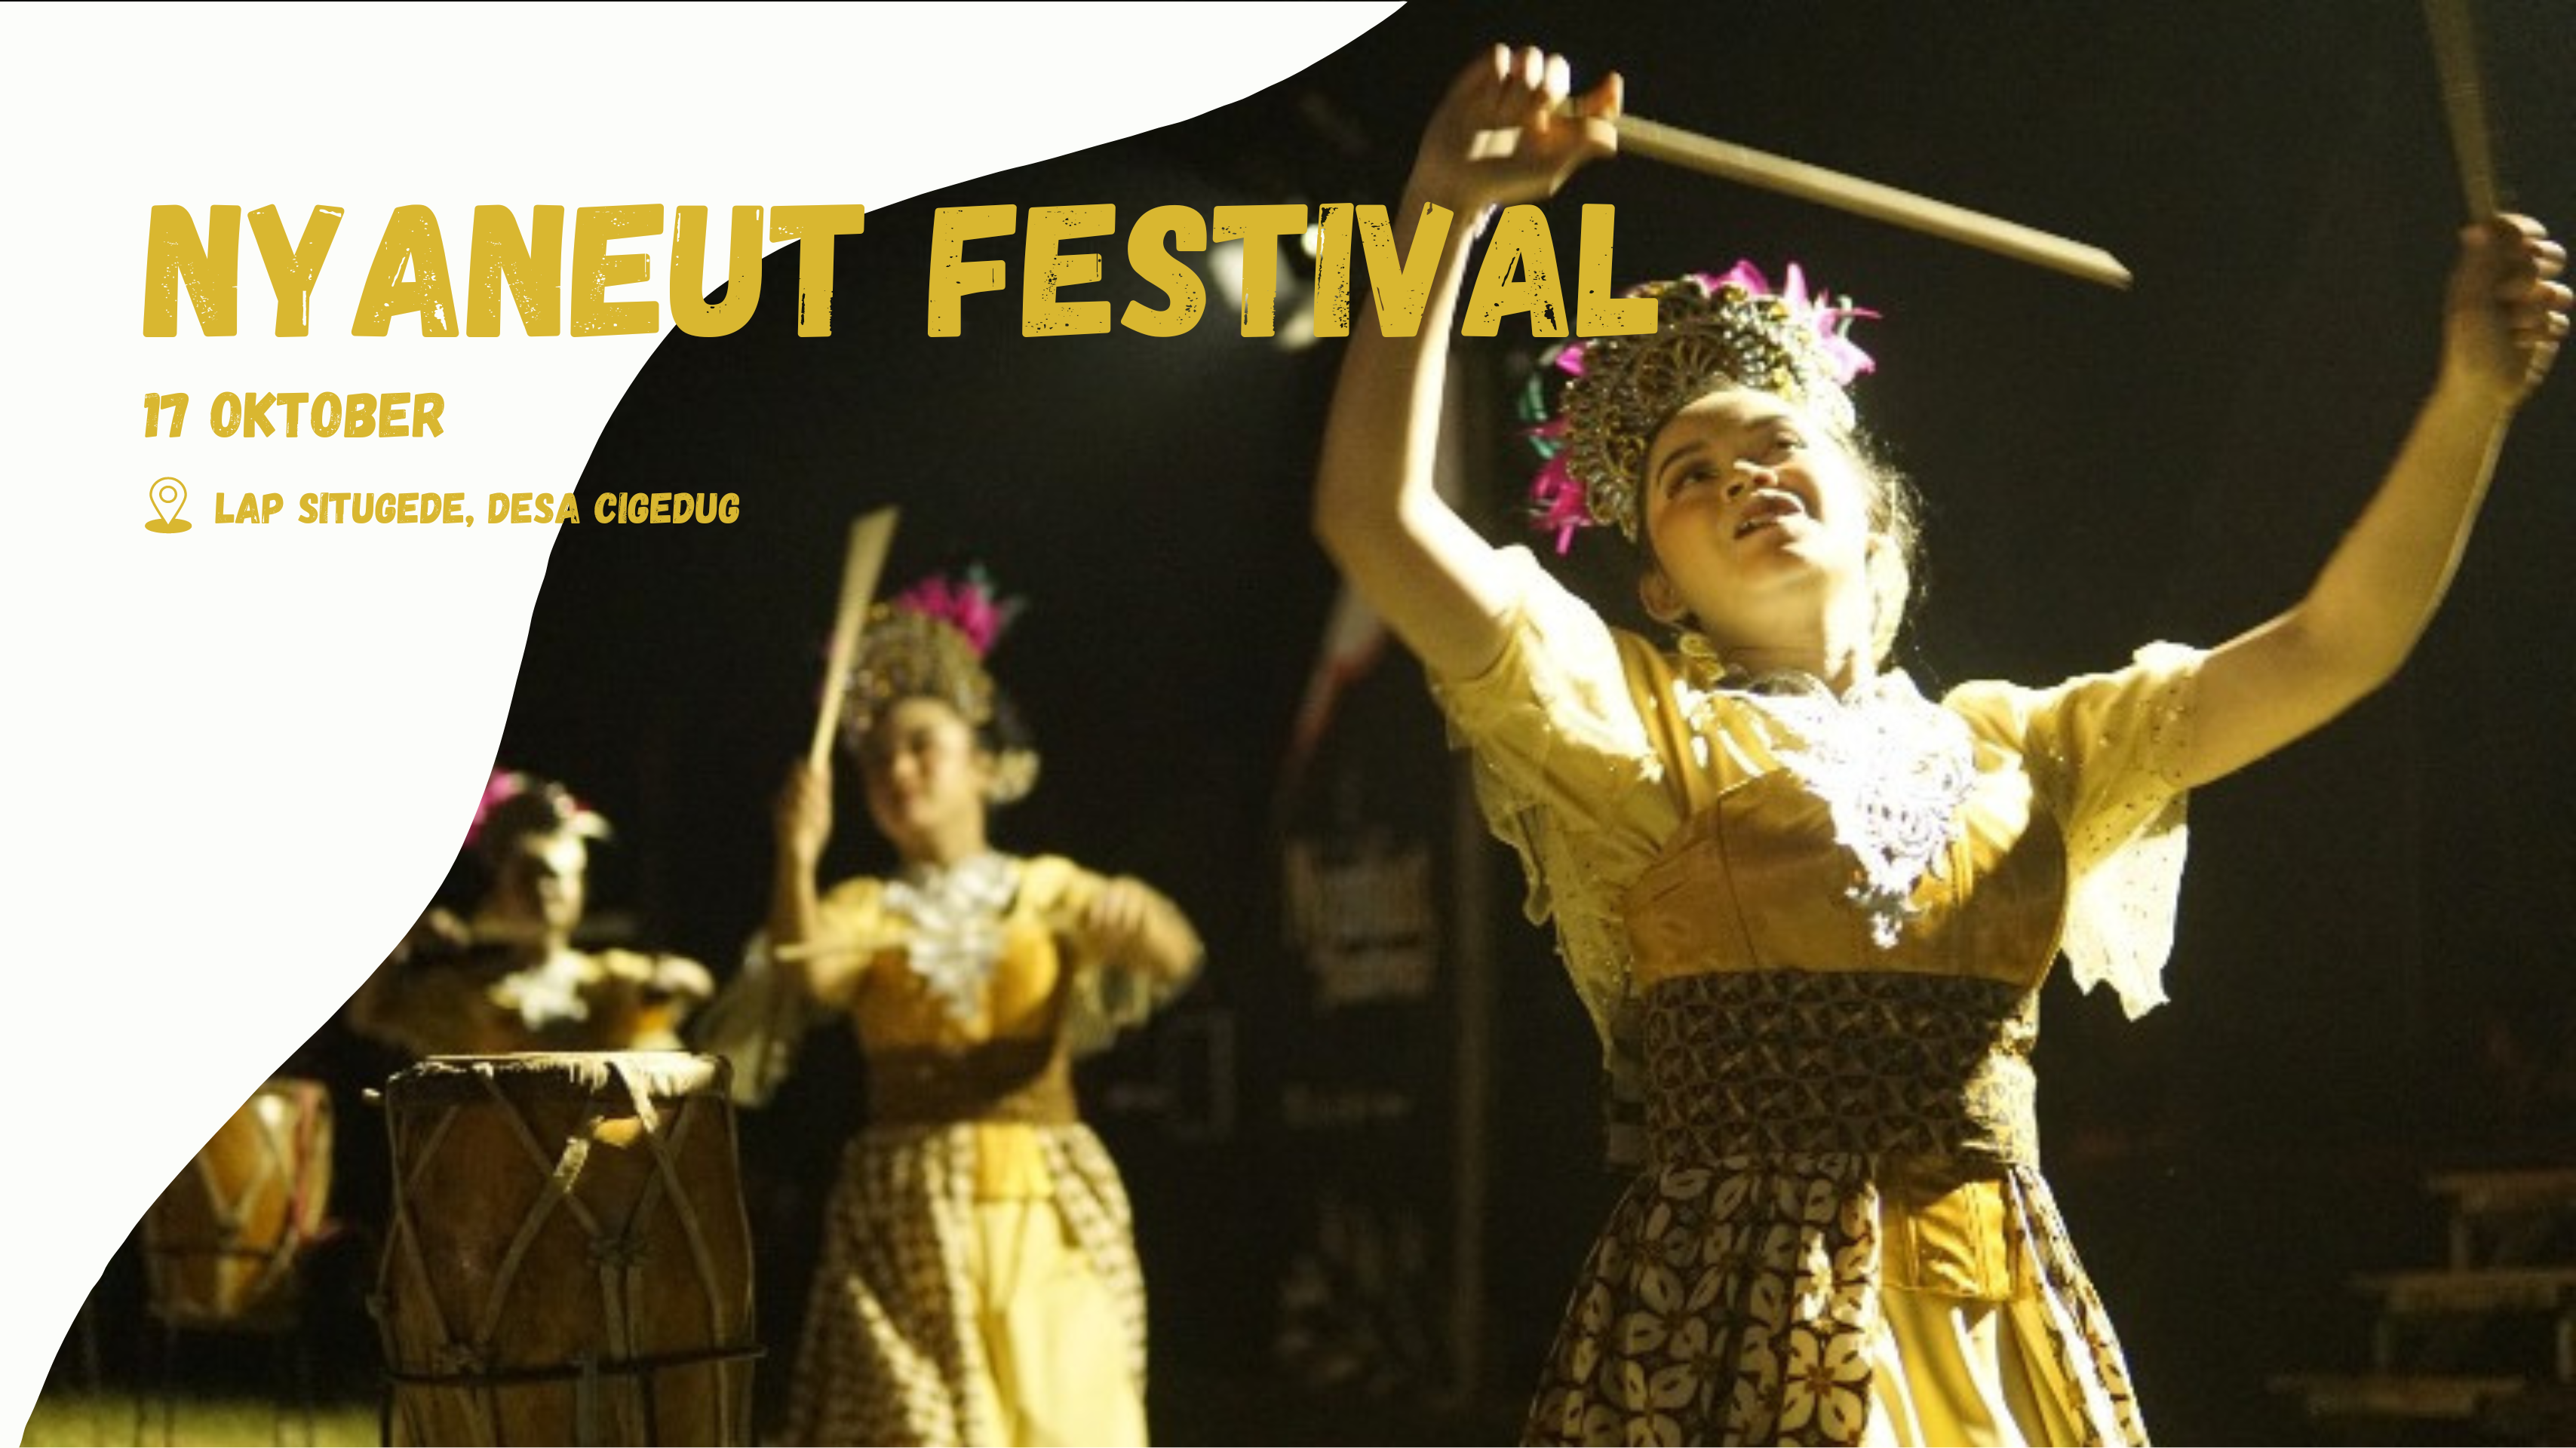 Nyaneut Festival